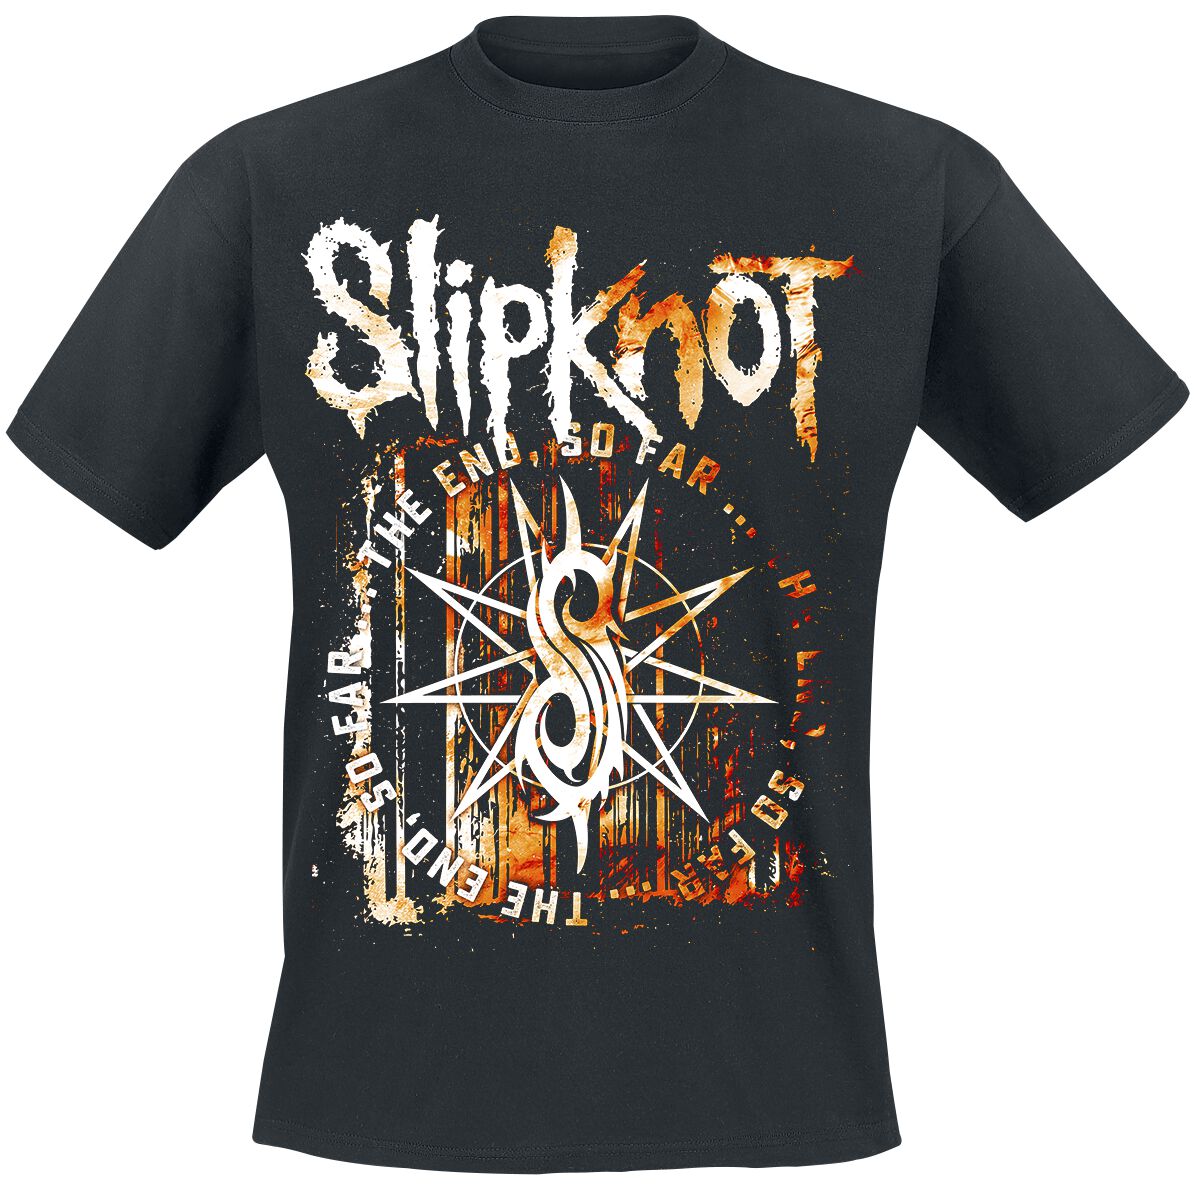 Slipknot T-Shirt - The End, So Far Splatter - S bis 3XL - für Männer - Größe M - schwarz  - Lizenziertes Merchandise!